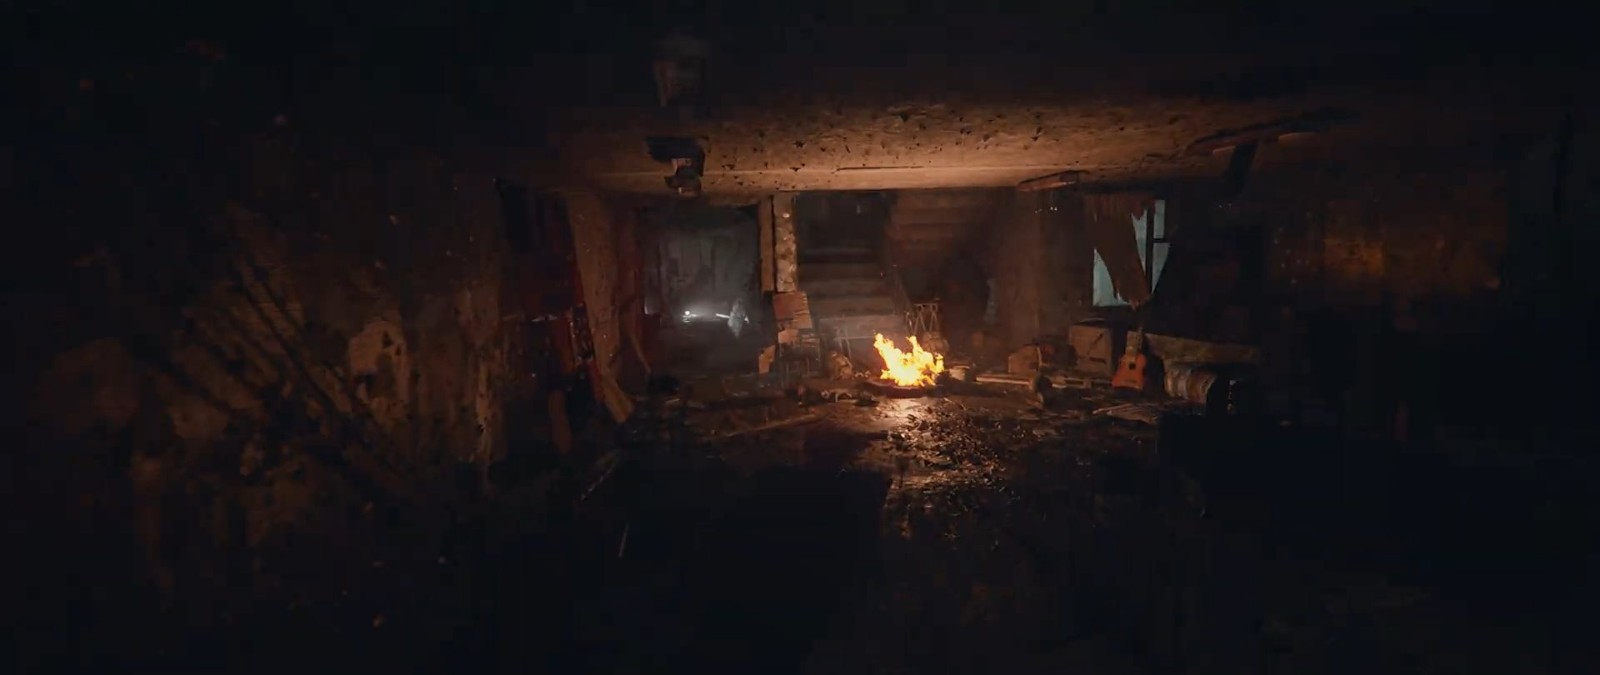 《潜行者2》发布实机预告片 展现细腻光影效果